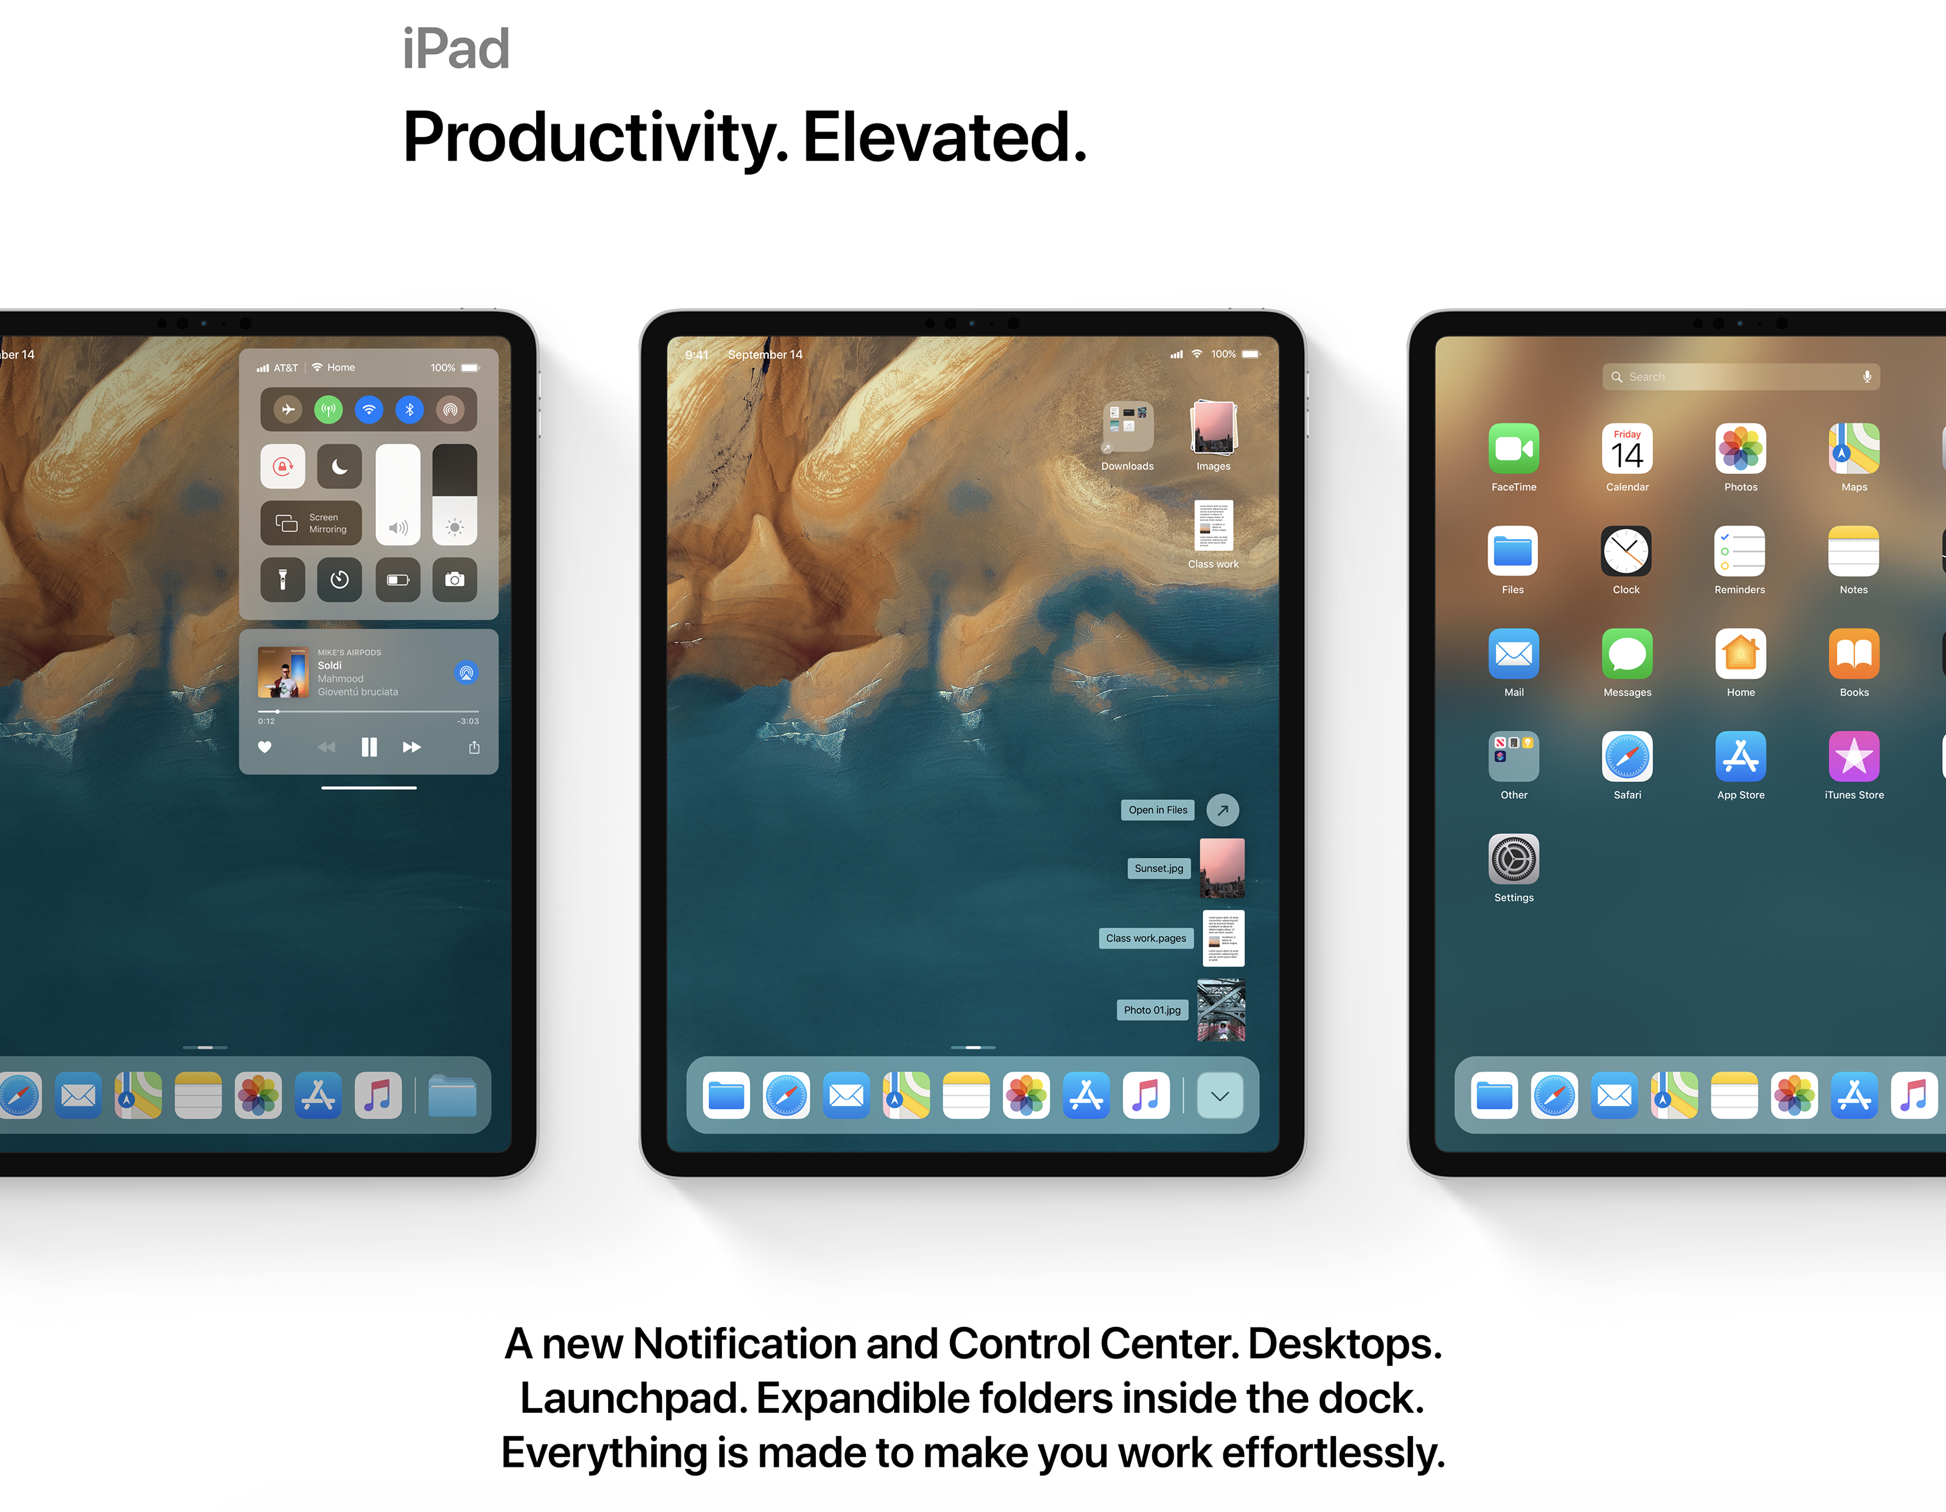 iOS 13 new iPad experience